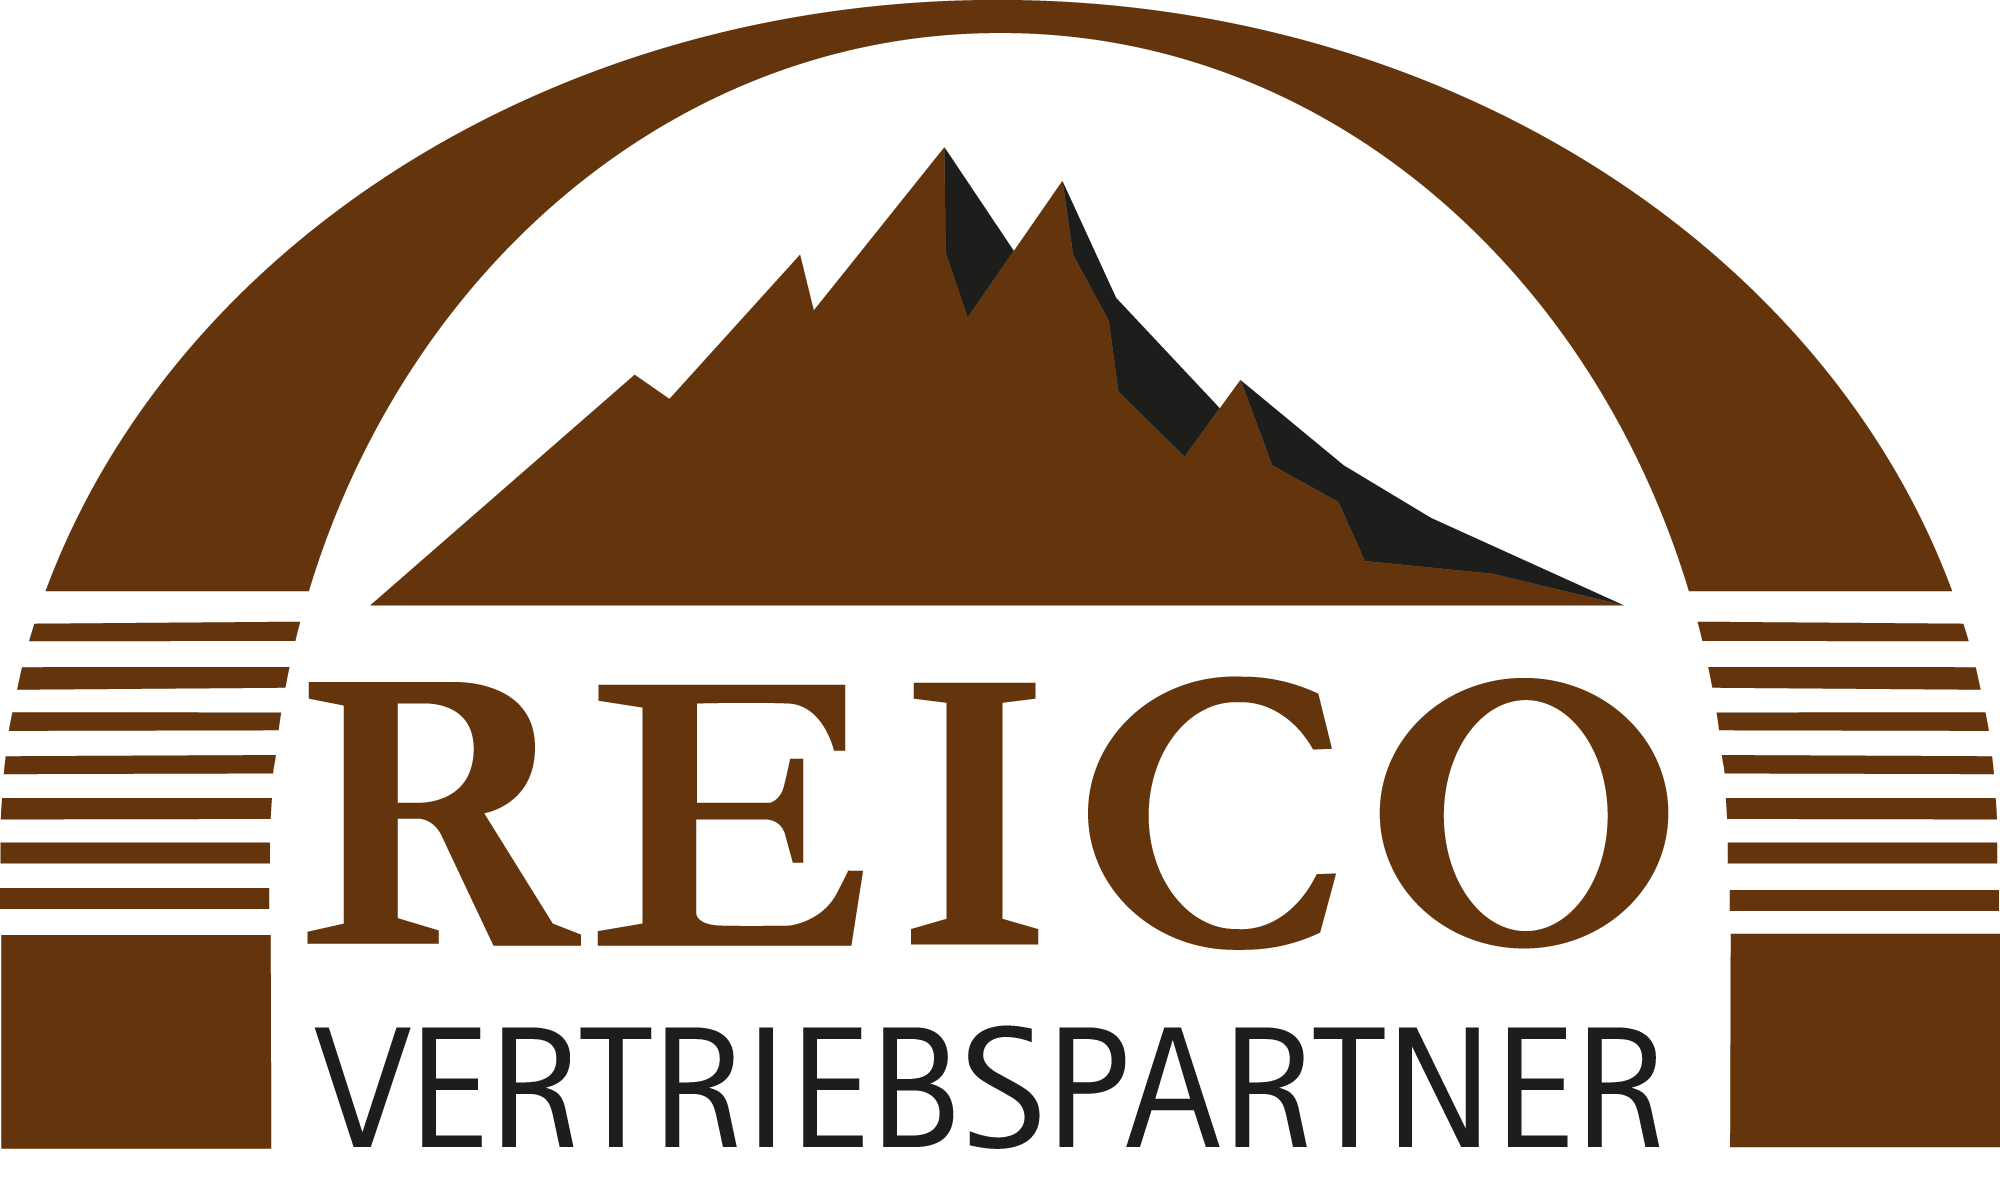 Reico-VERTRIEBSPARTNER-Logo_2000